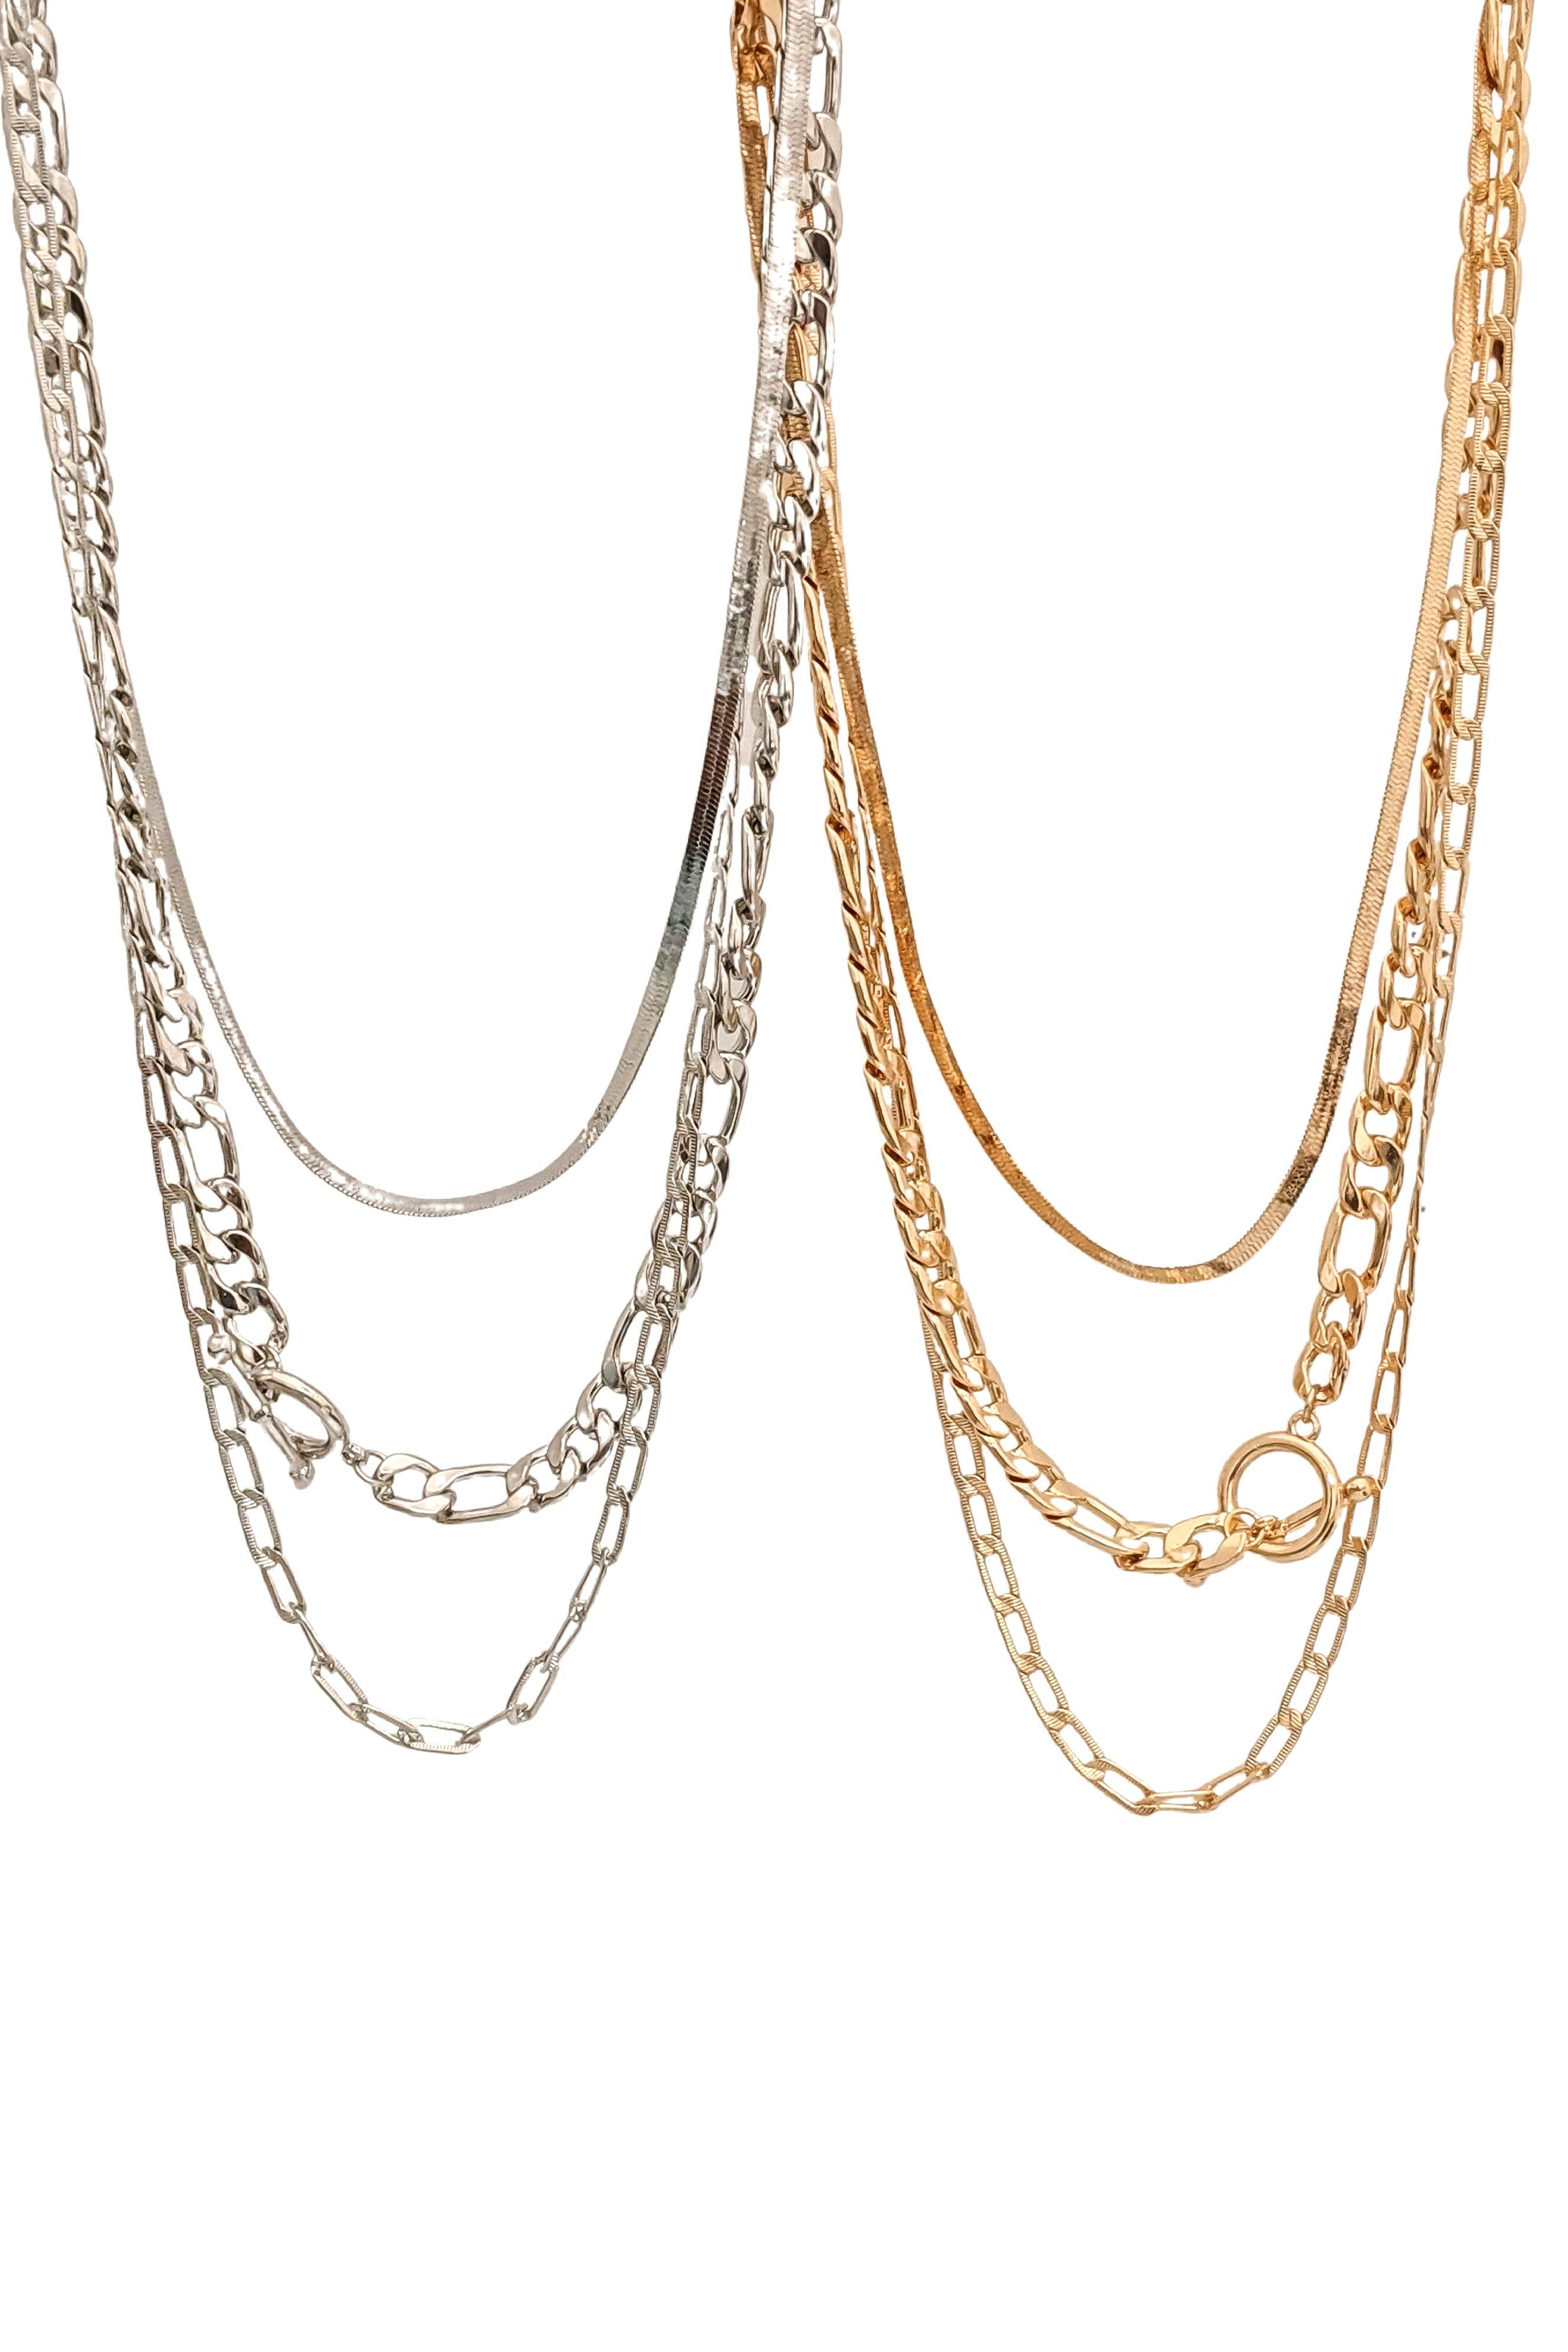 Silber Gold bunte Kreis Zirkonia Kette Halskette für Frauen Modeschmuck